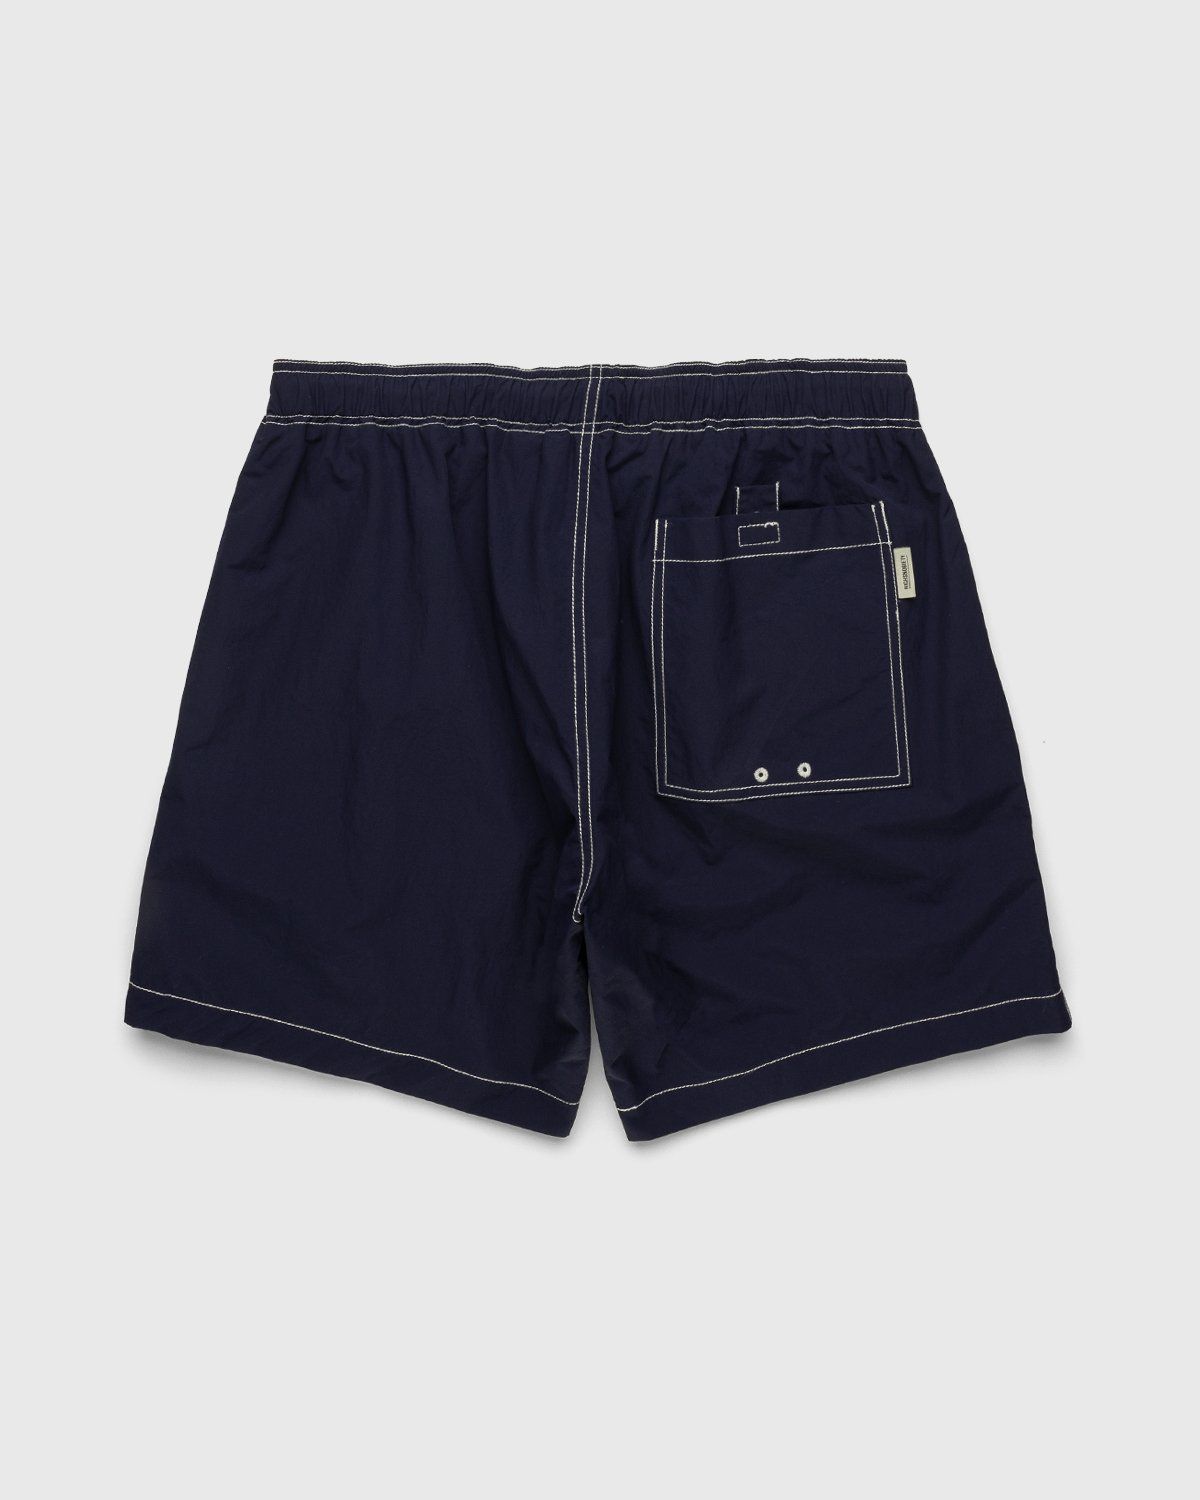 Highsnobiety – Contrast Brushed Nylon Water Shorts Navy - Shorts - Blue - Image 2